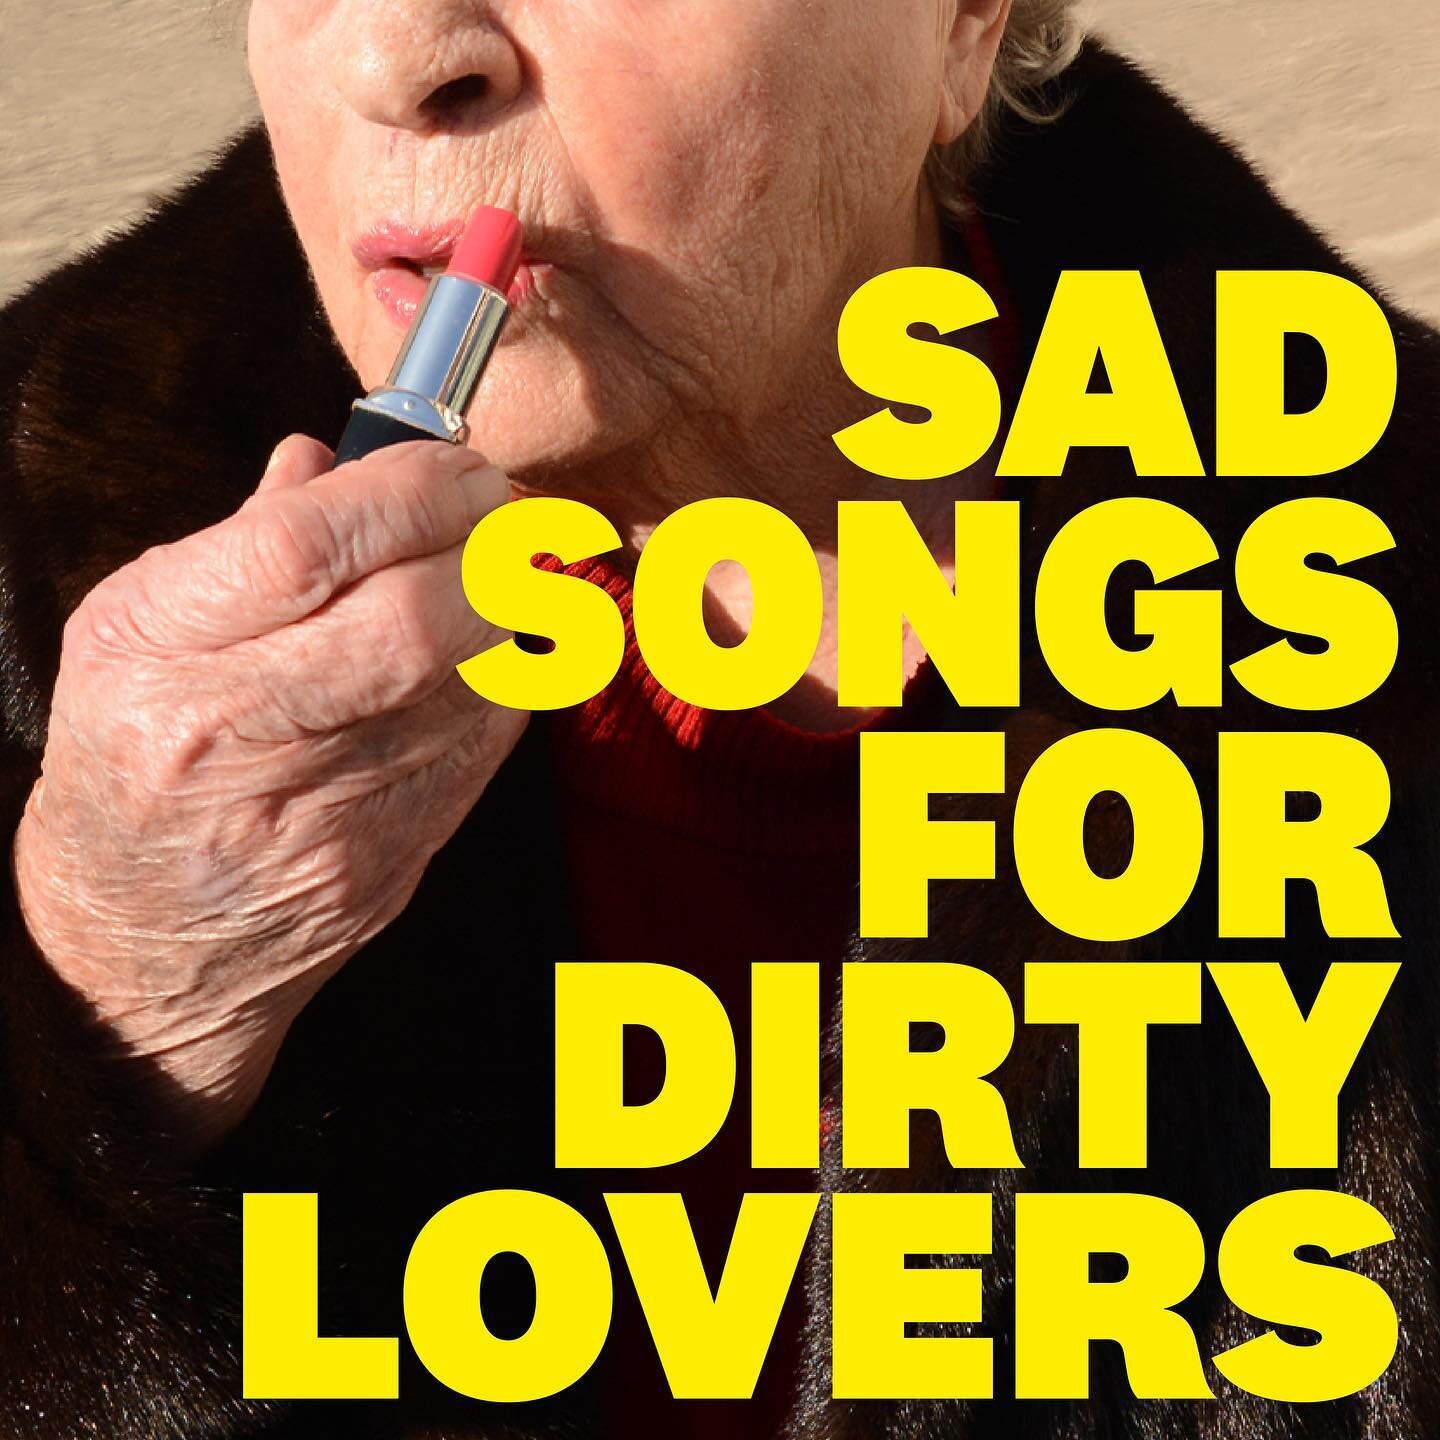 rebranding vinyl album cover The National - Sad songs for dirty lovers